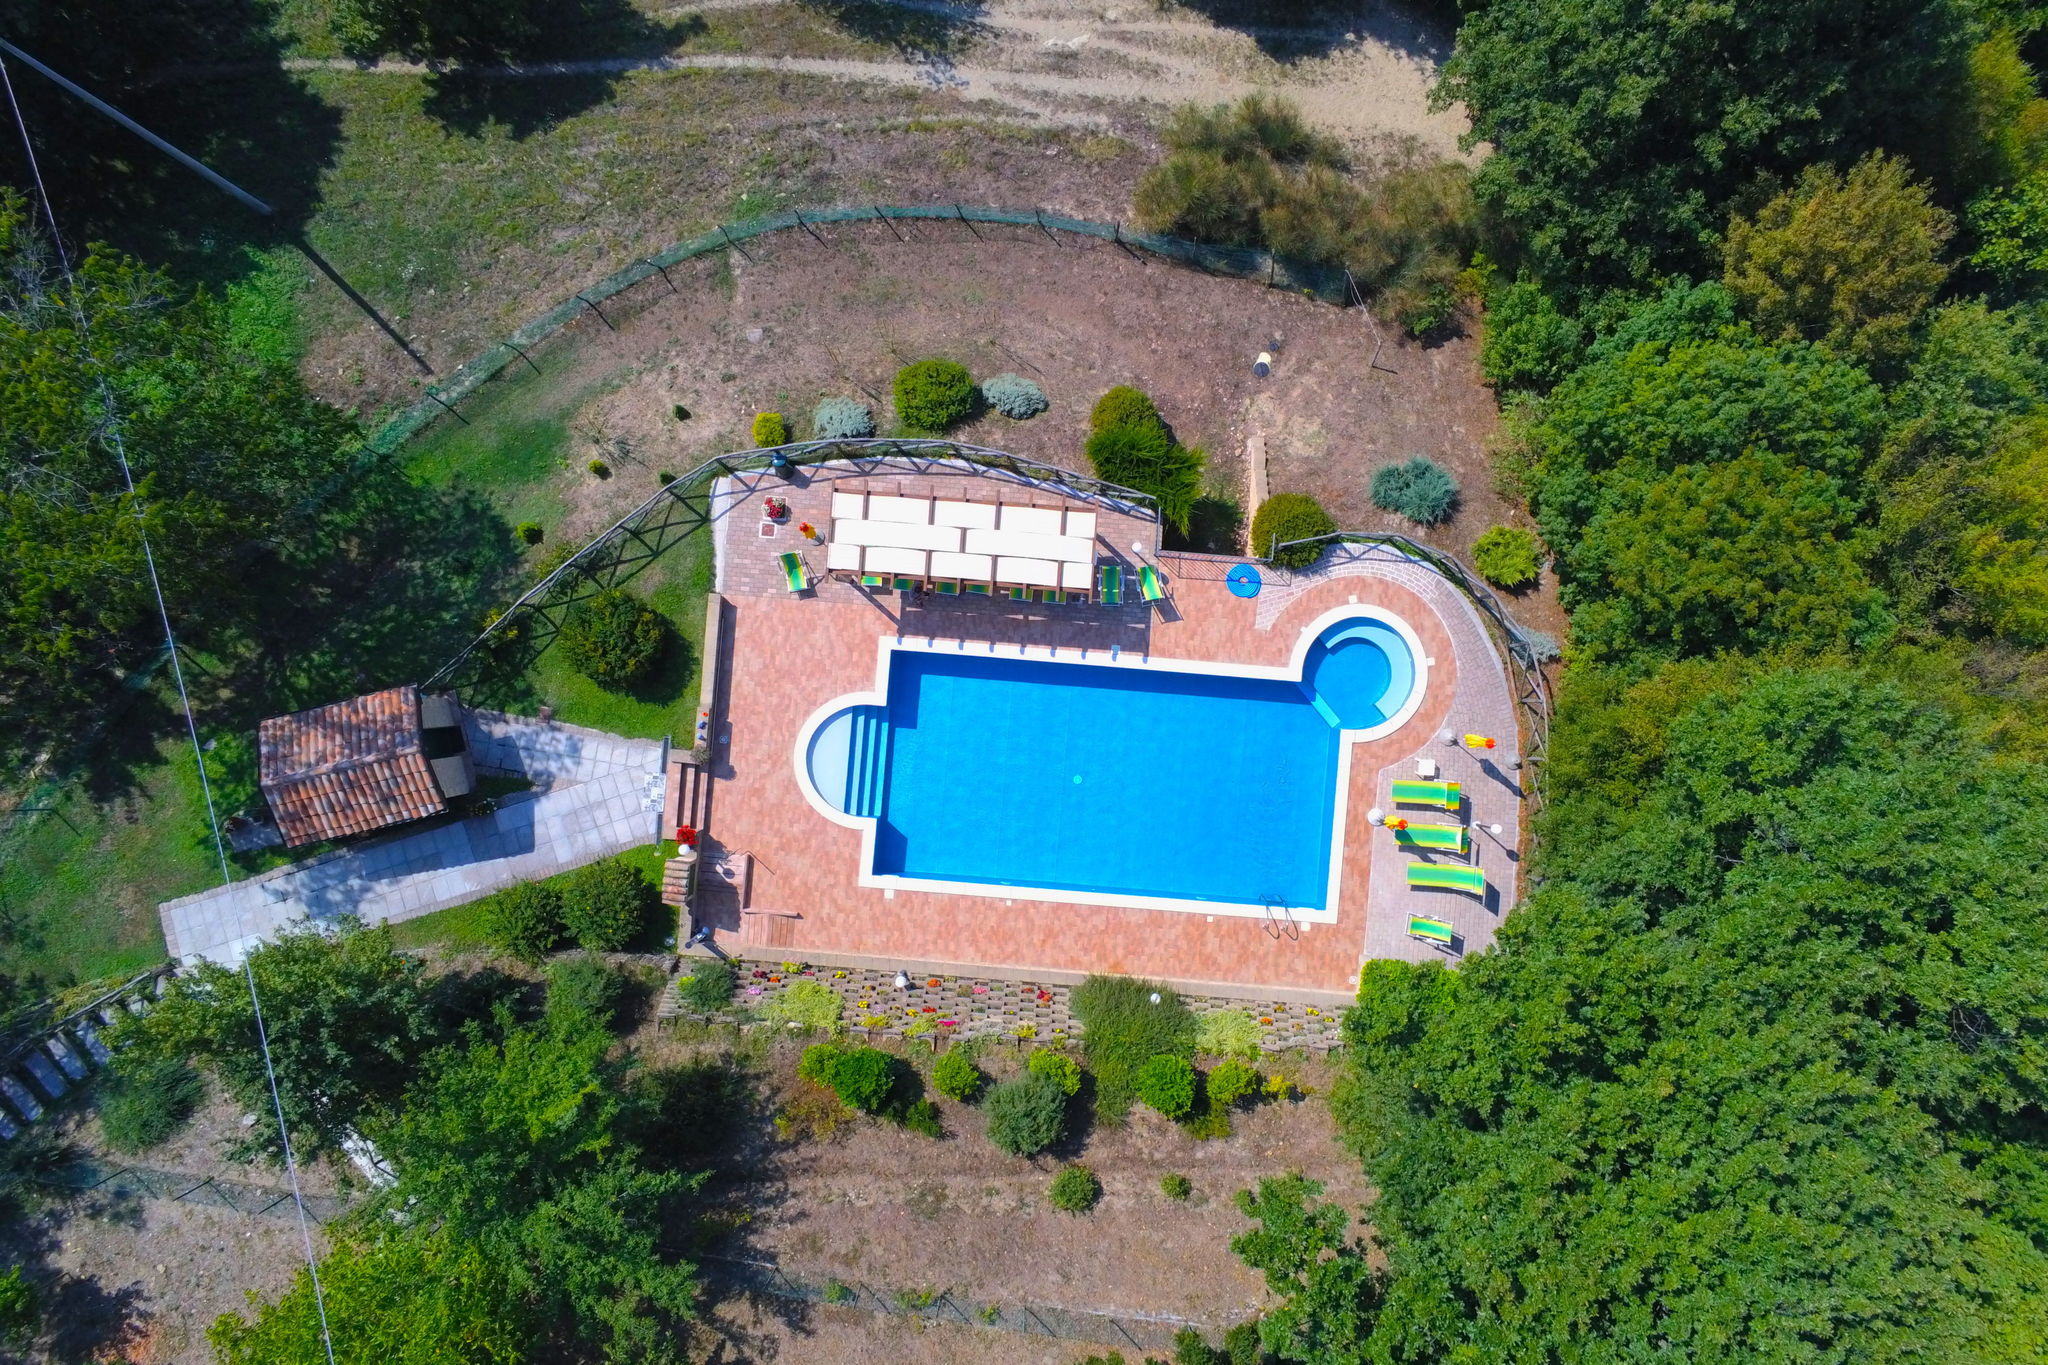 Stenen landhuis in Le Marche met een zwembad